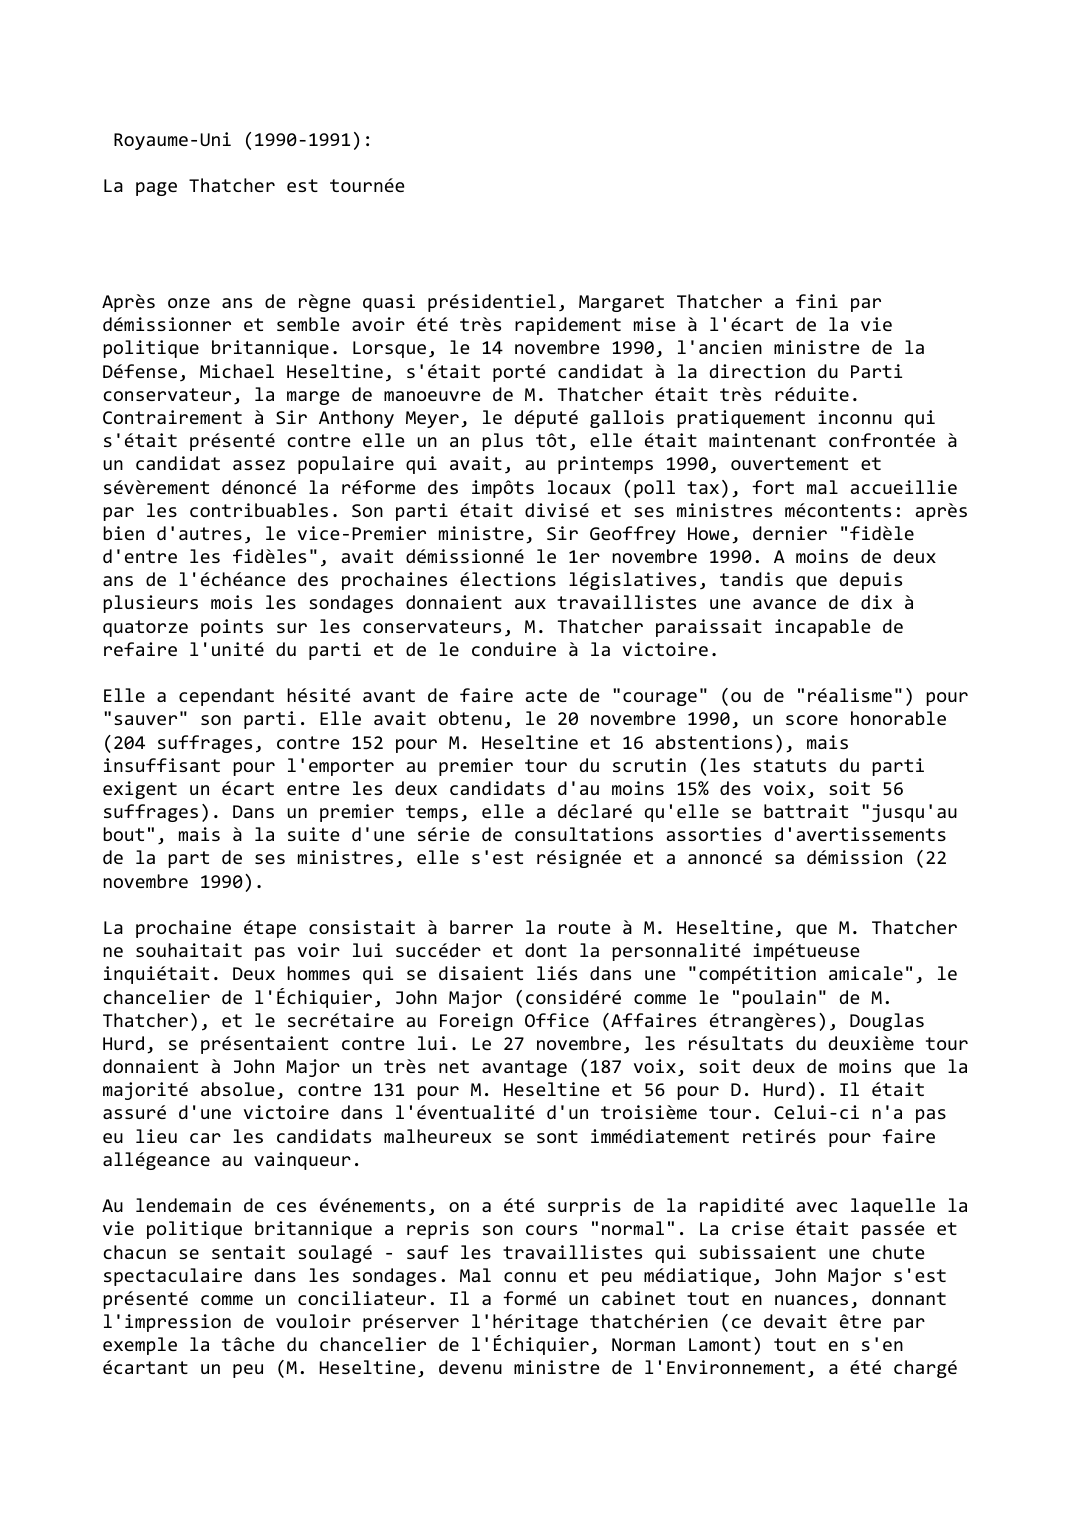 Prévisualisation du document Royaume-Uni (1990-1991):

La page Thatcher est tournée